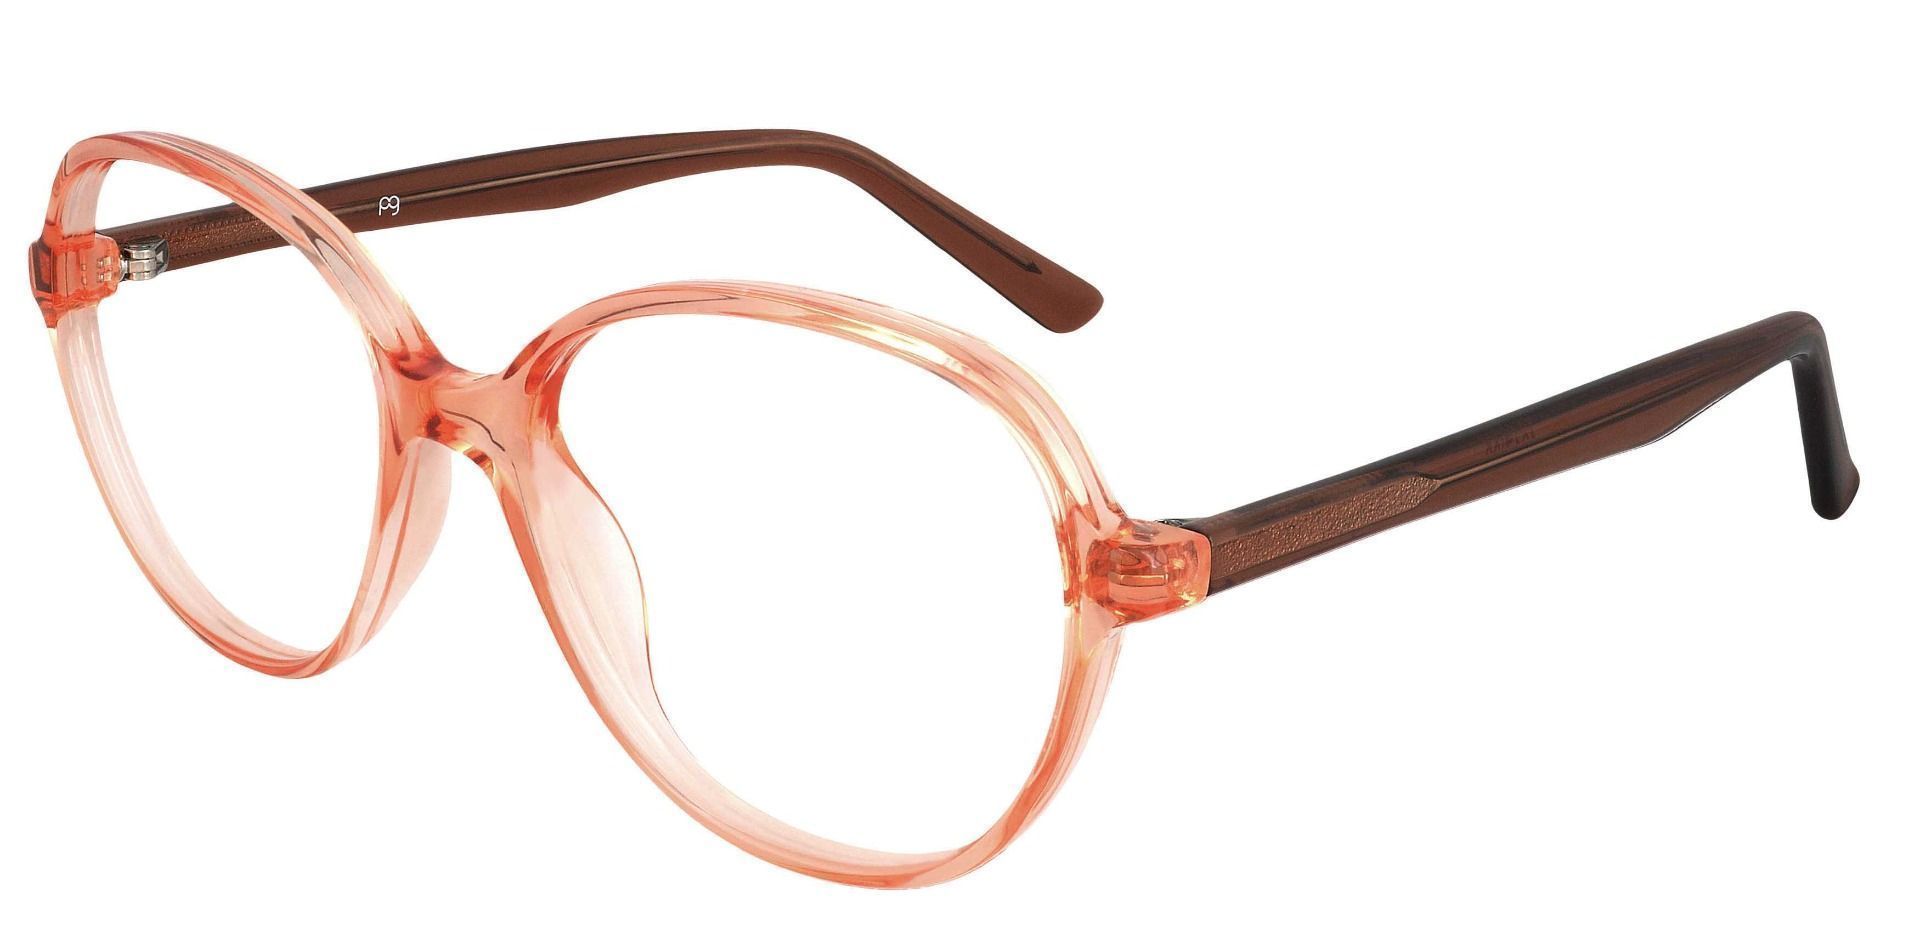 Luella Oval Prescription Glasses - Orange